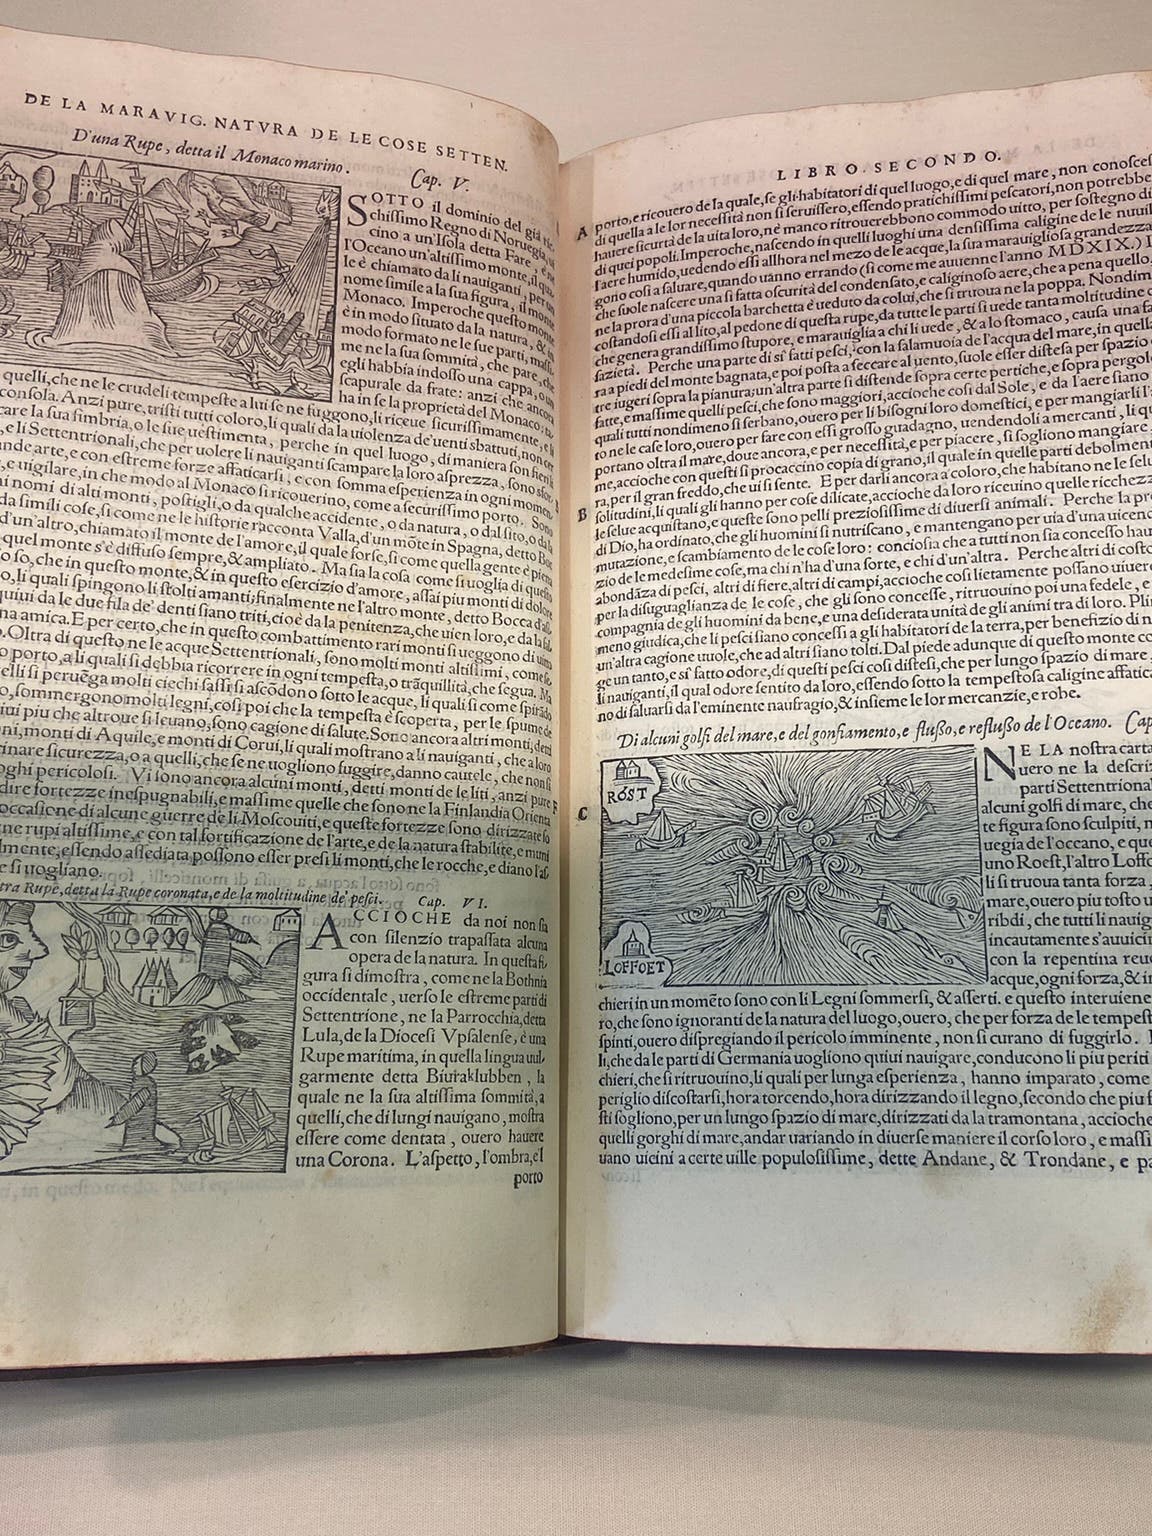 Photo of book by Olaus Magnus, Historia delle genti et della natvra delle cose settentrionale